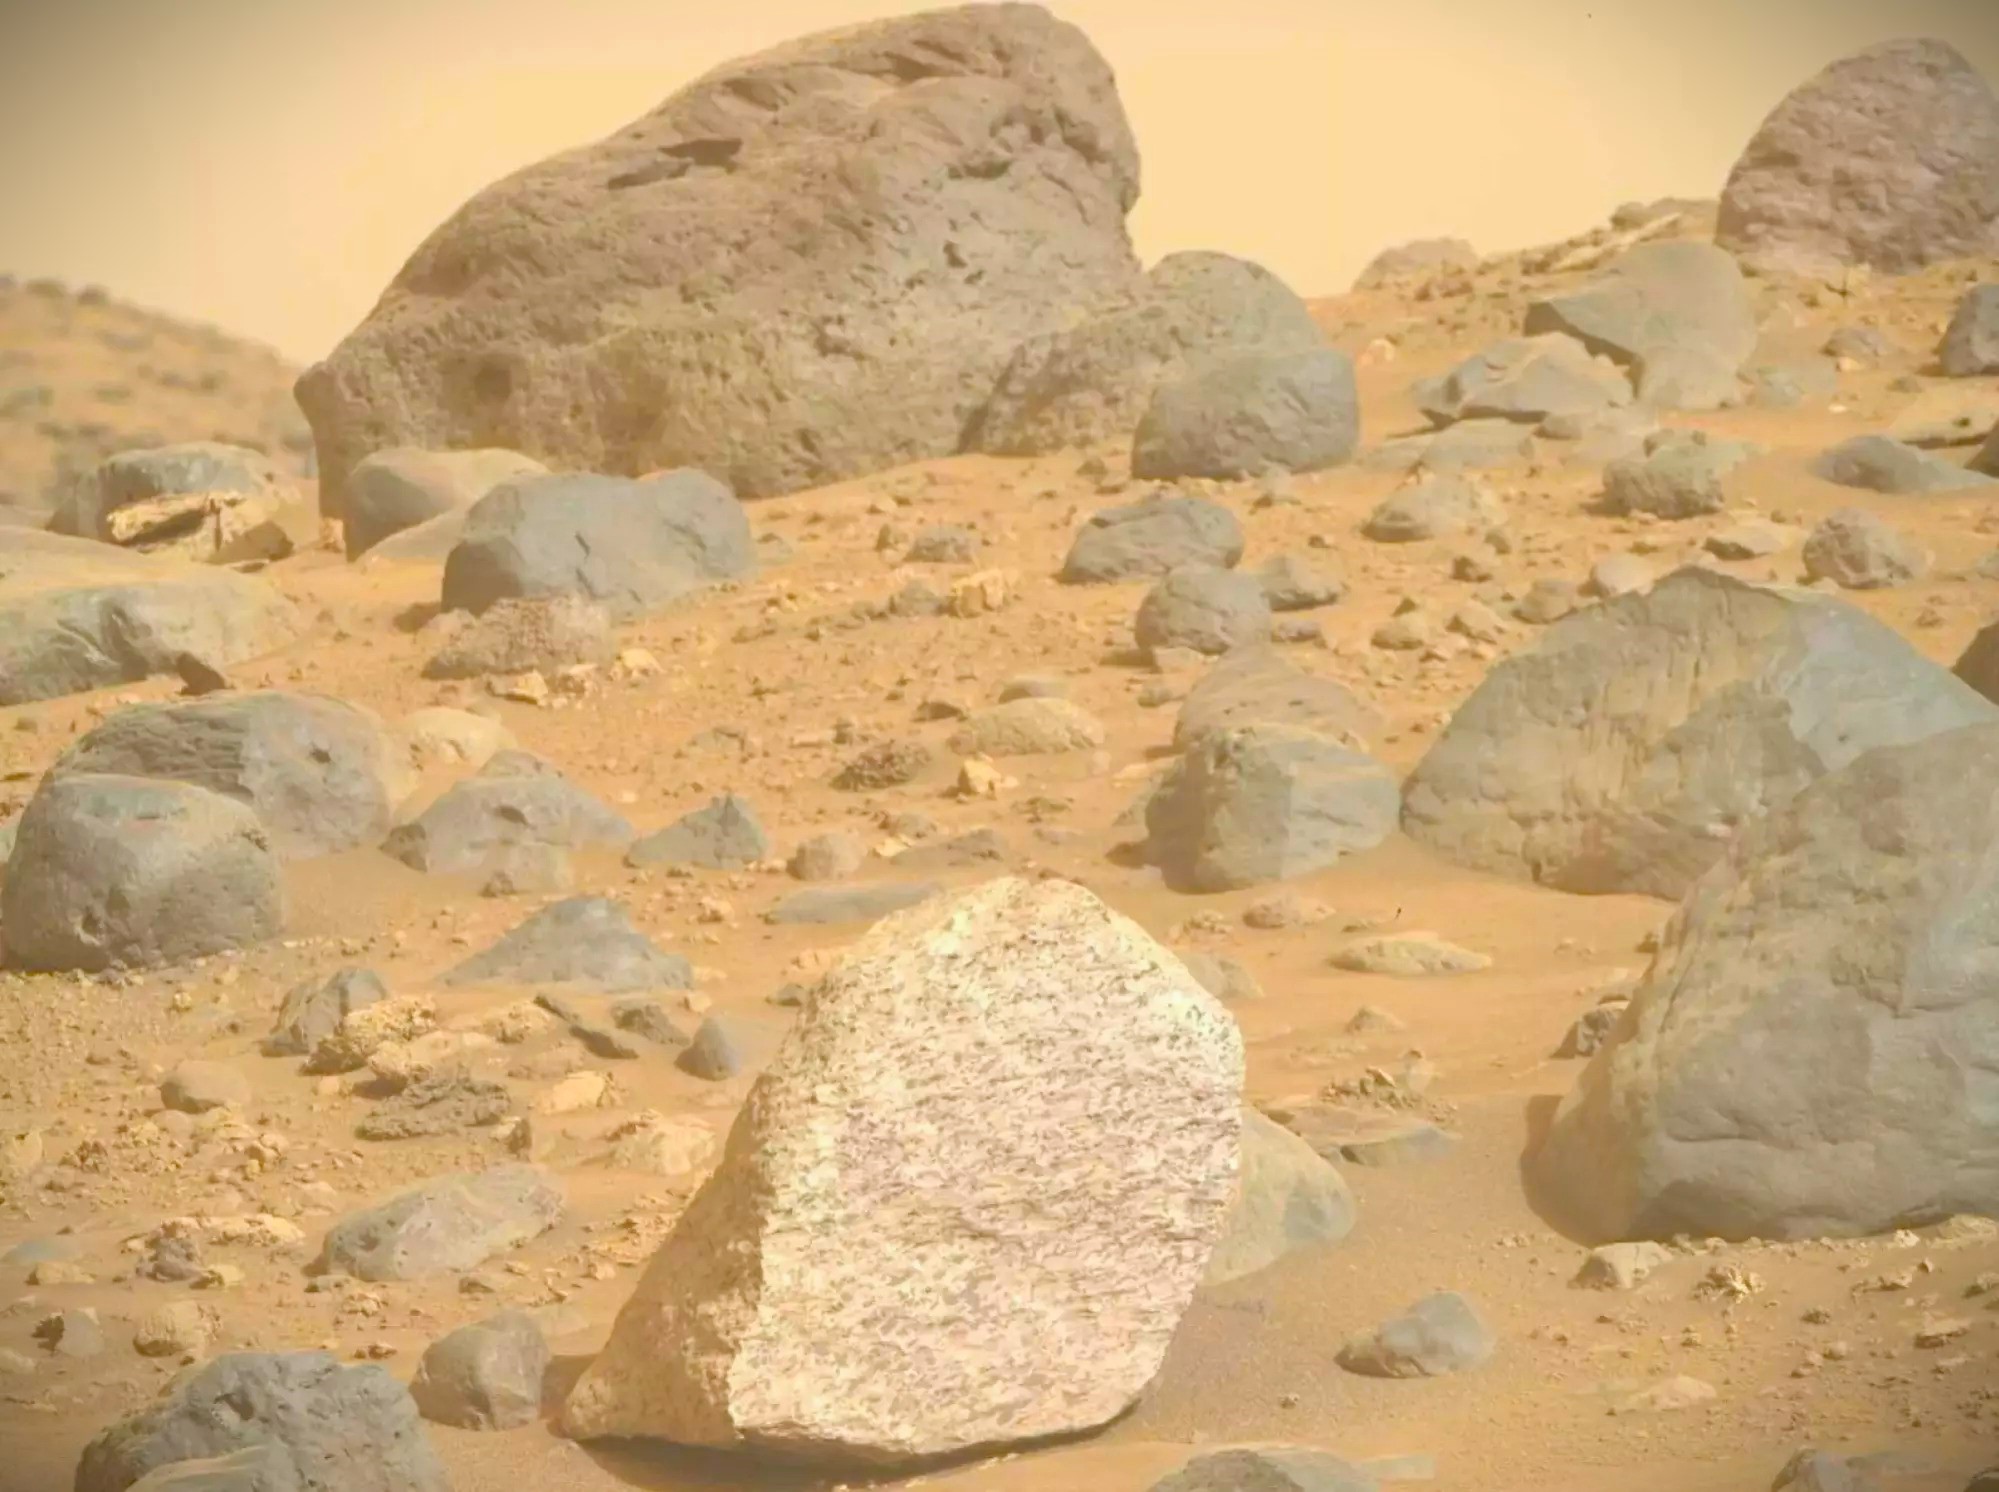 Загадочное происхождение: на Марсе обнаружили самую странную геологическую находку